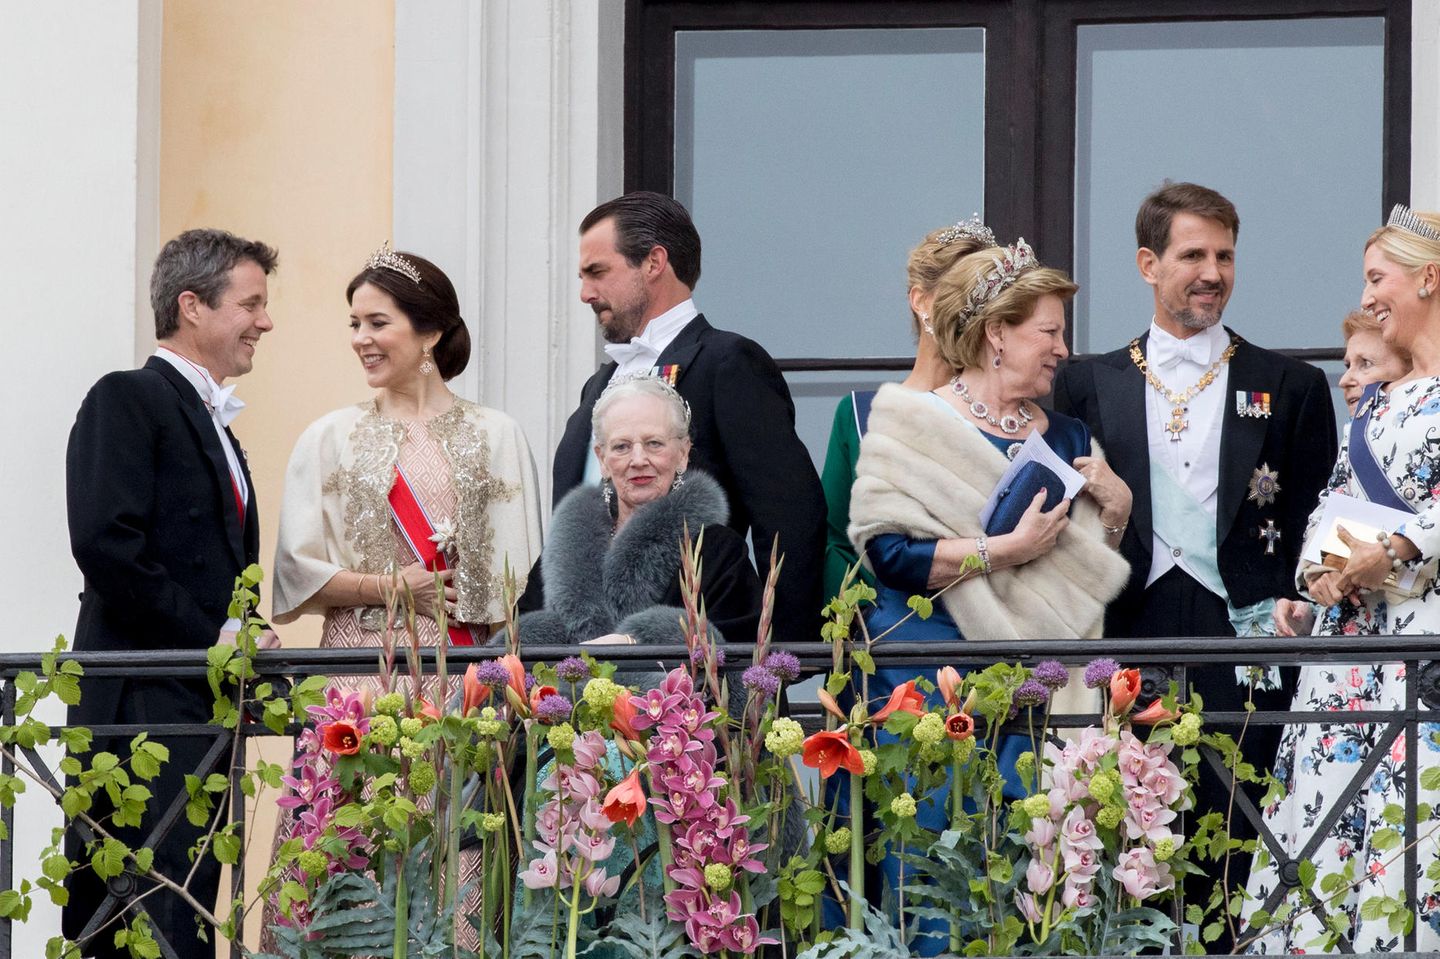 Alle plaudern, Königin Margrethe schaut sich um und wirkt etwas müde.